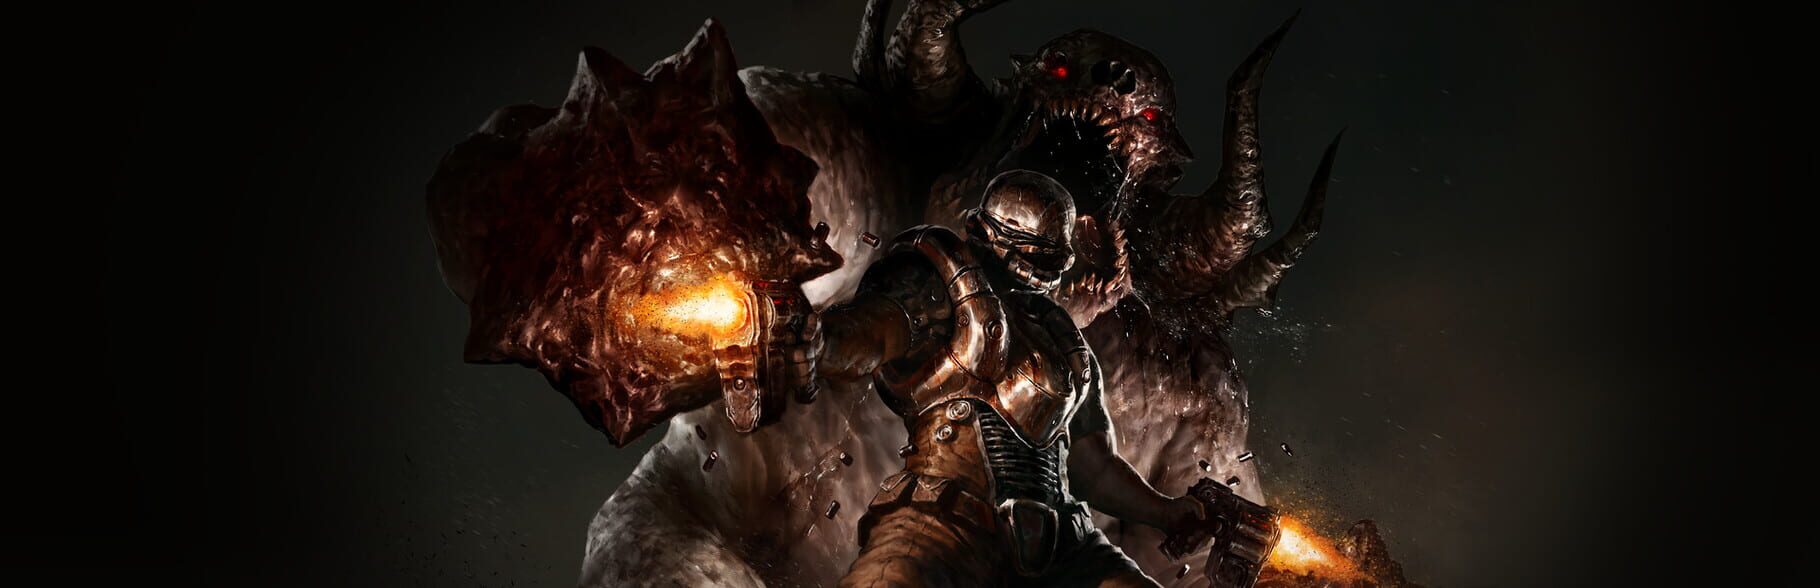 Doom 3 bfg edition стим фото 95